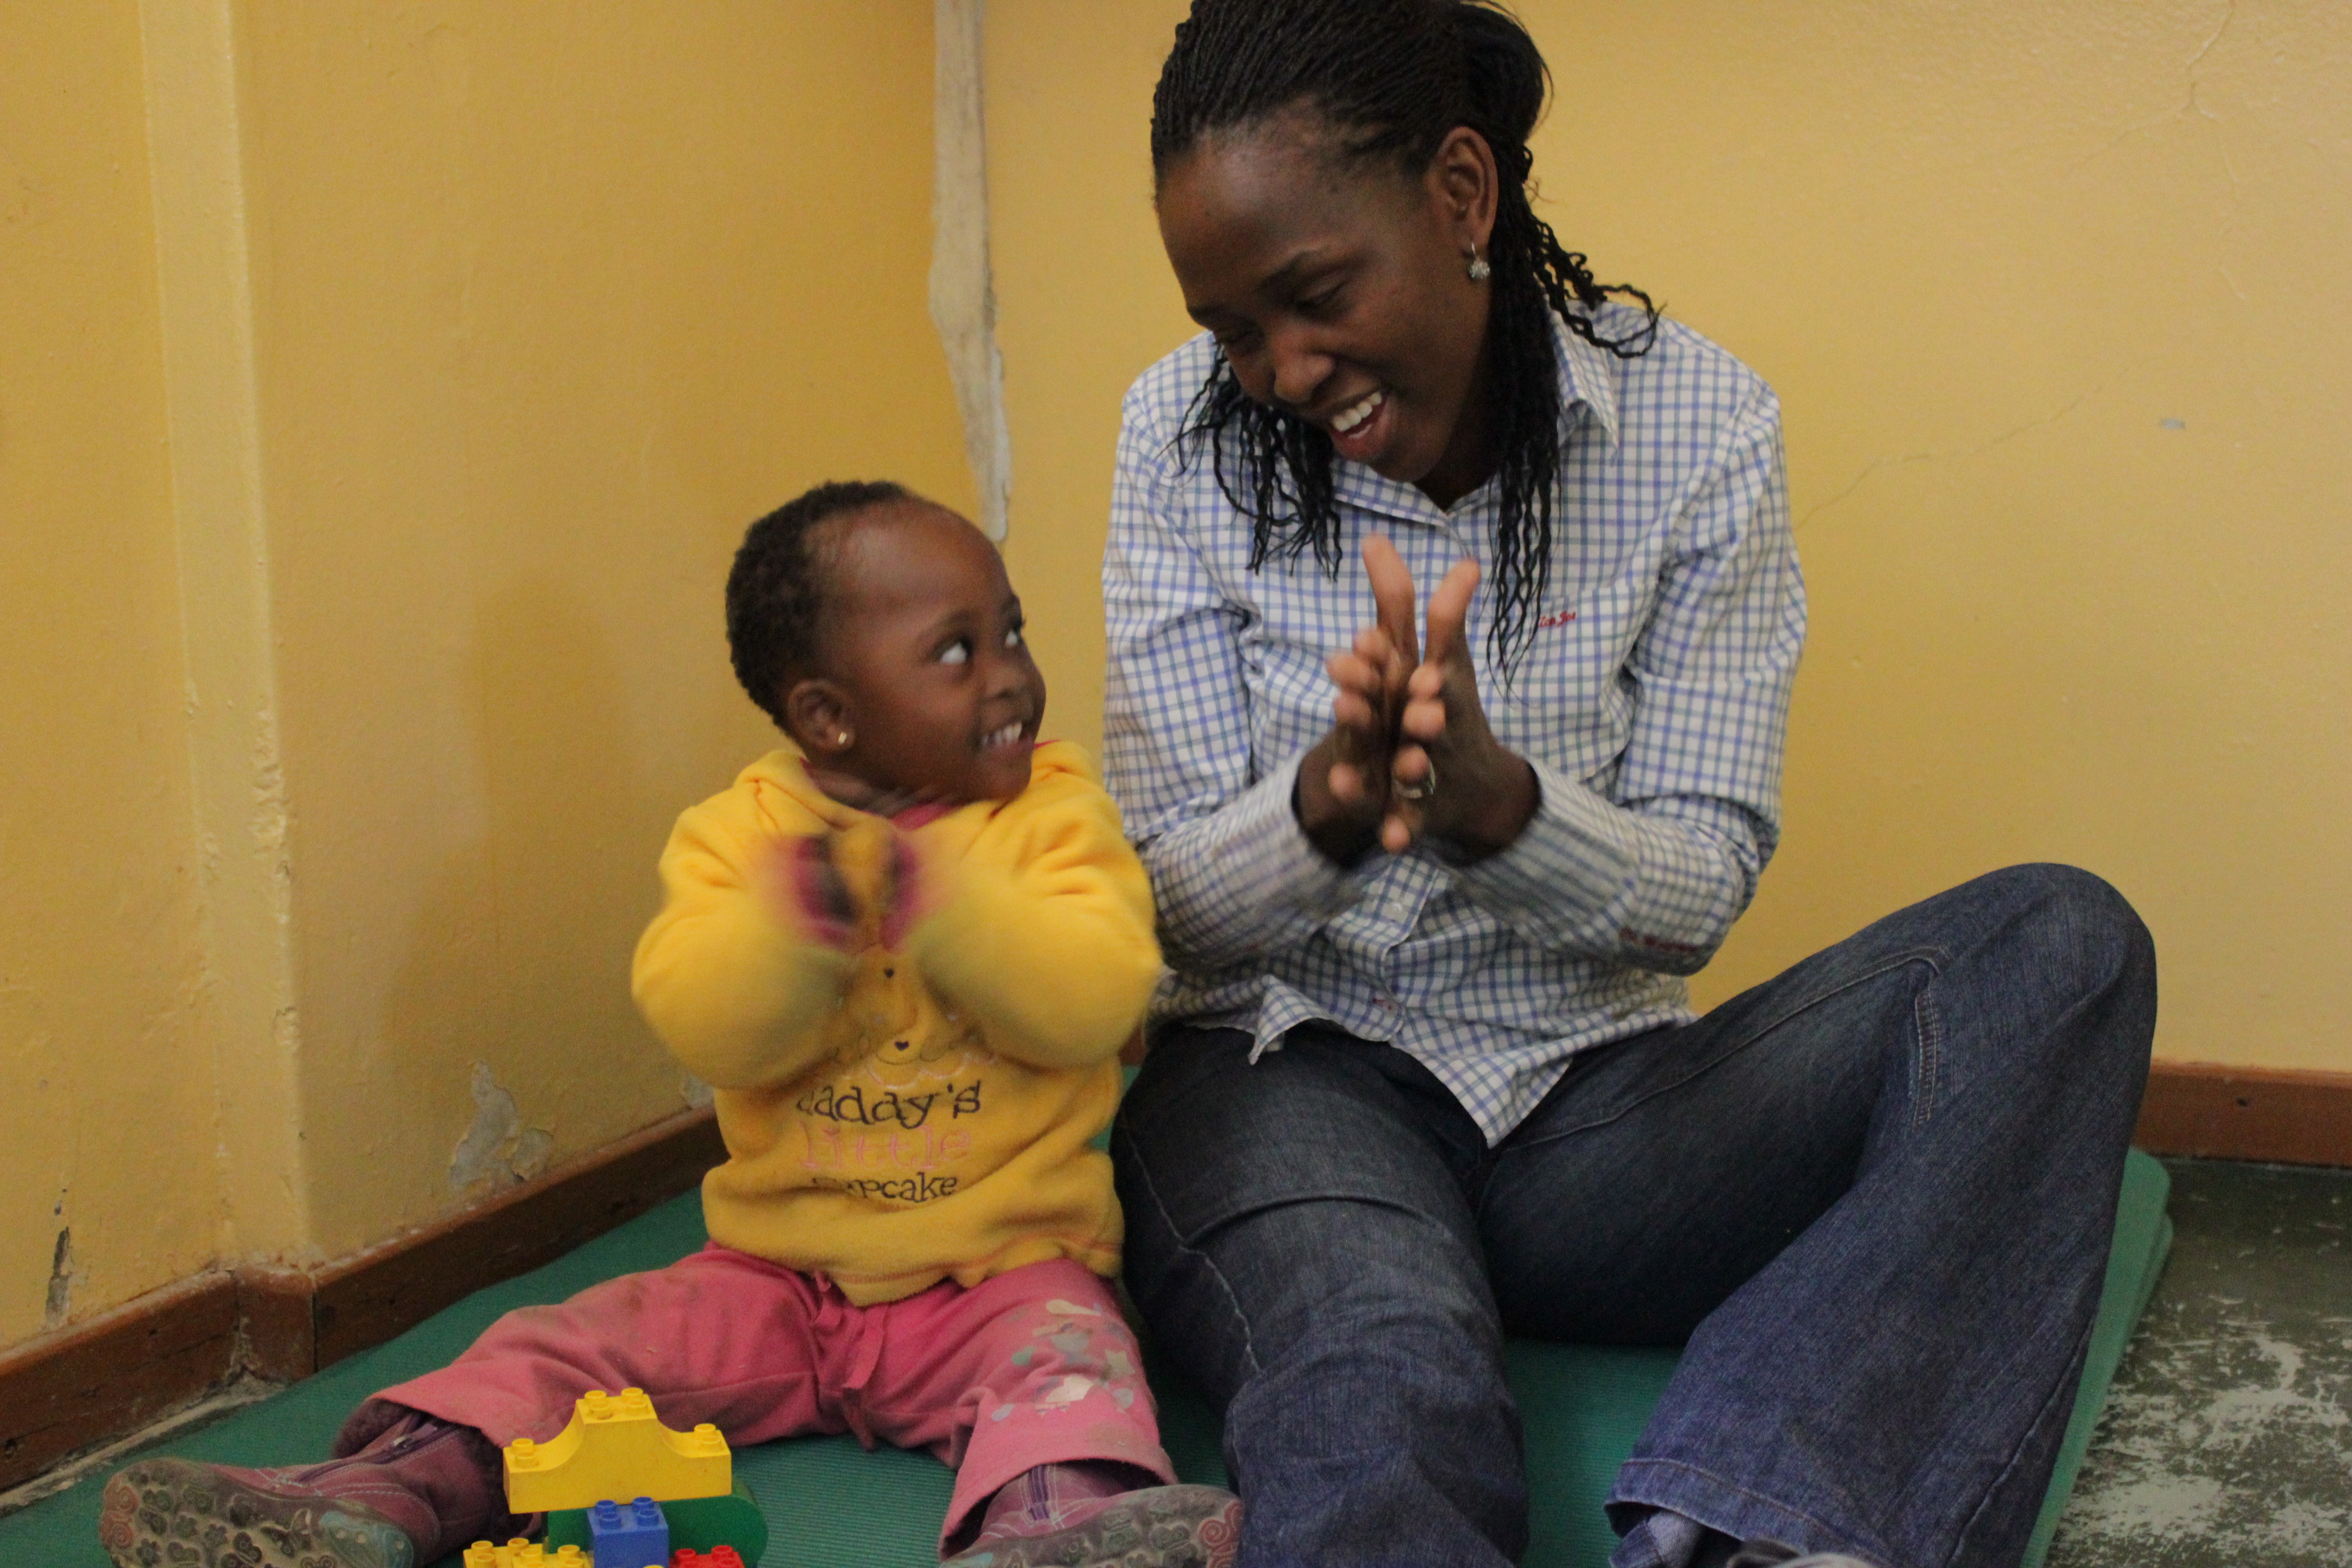 Tigele-tytär on laittanut Tegugo Nhlathon arvot uuteen järjestykseen. ”Tärkeintä on rakkaus ja toistensa tukeminen”